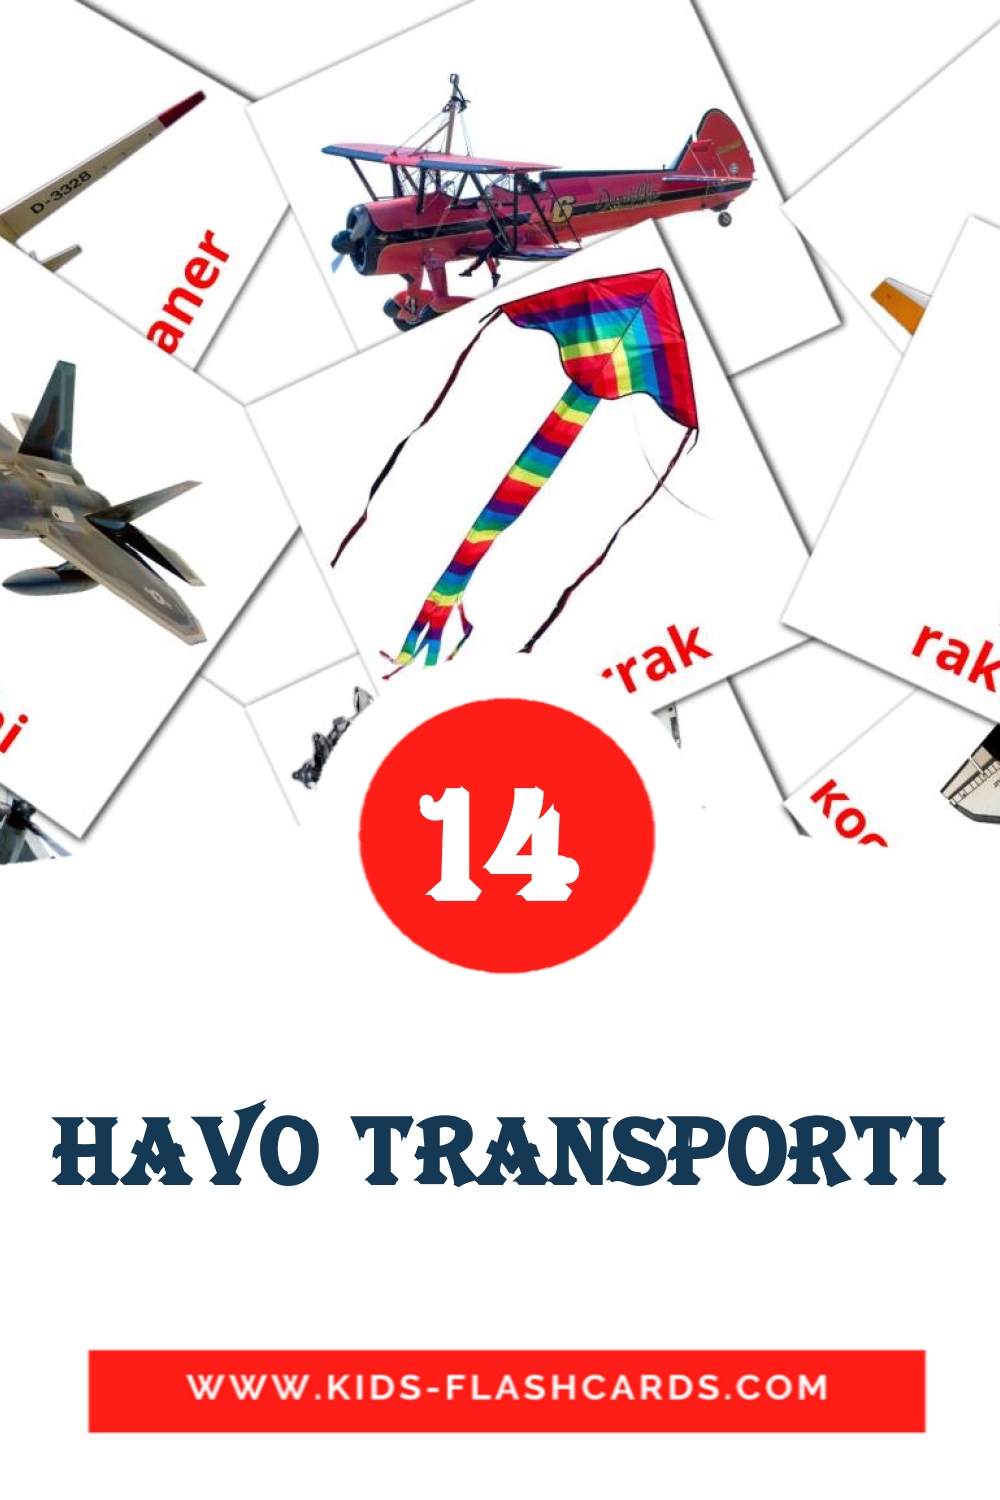 14 Havo transporti Picture Cards for Kindergarden in uzbek